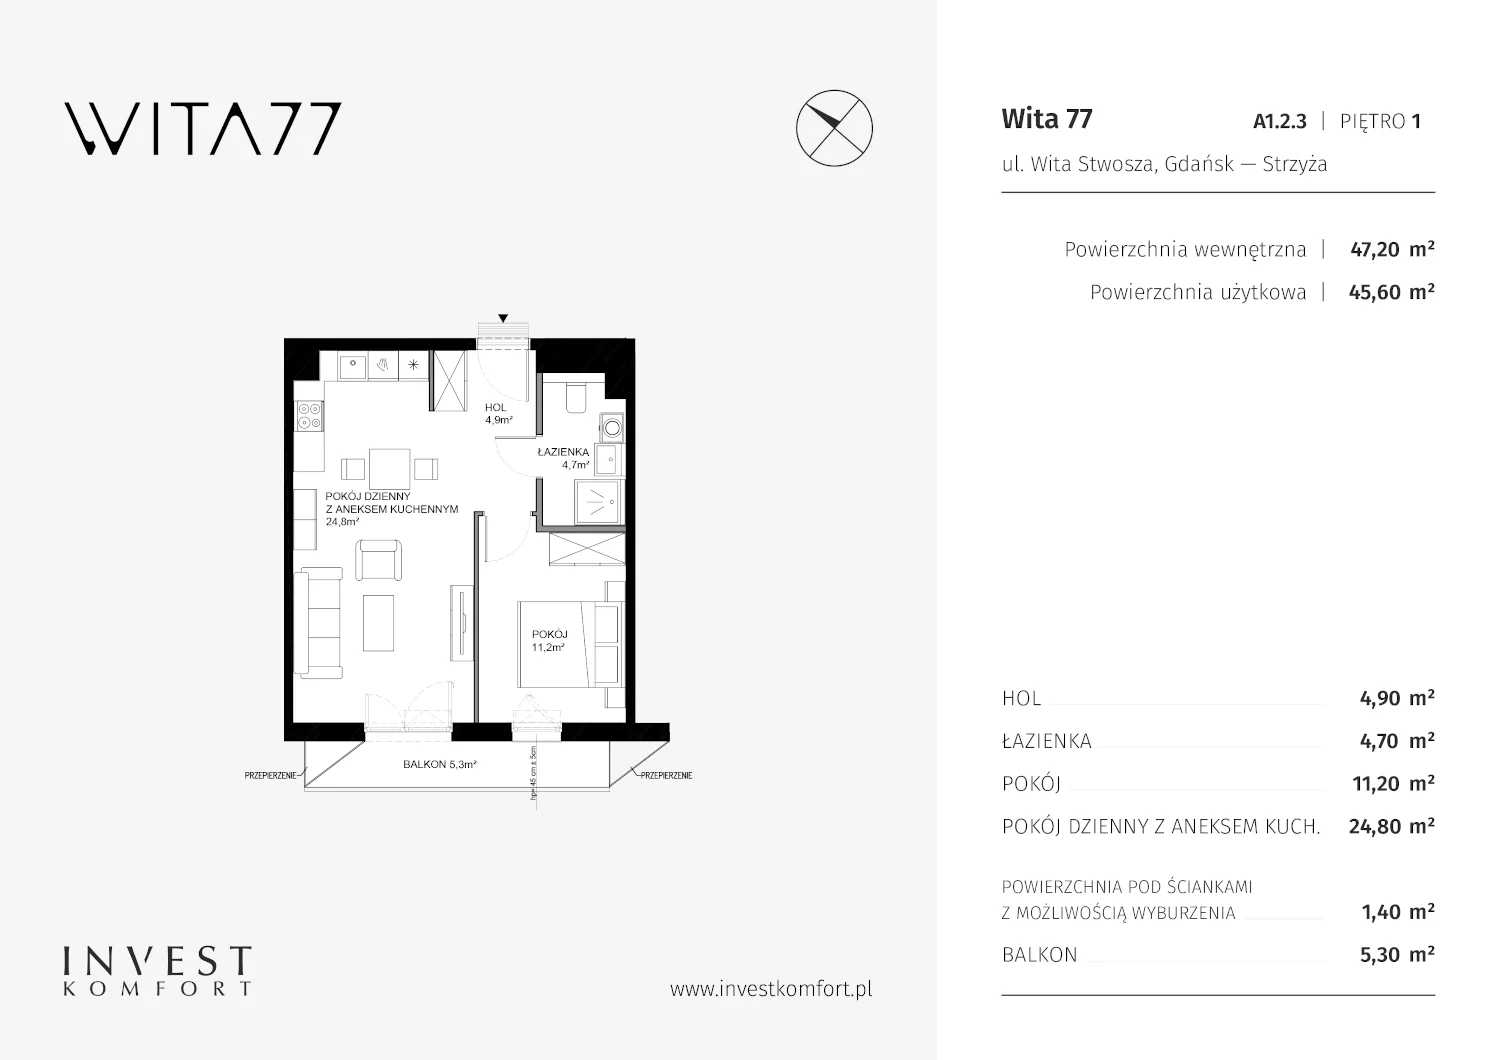 Apartament 47,20 m², piętro 1, oferta nr A1.2.3, Wita 77, Gdańsk, Strzyża, ul. Wita Stwosza 77